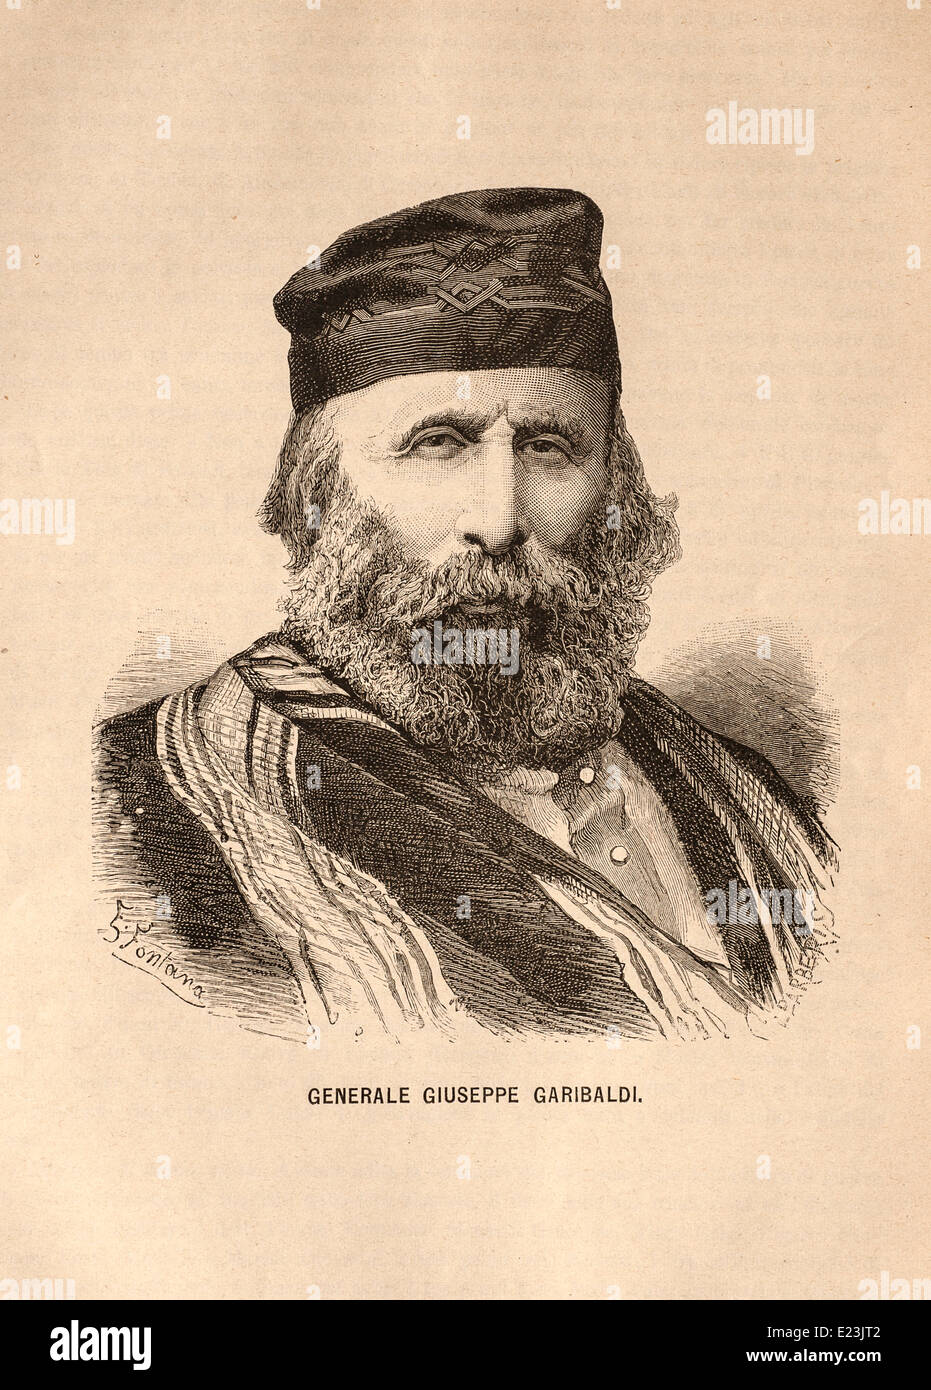 Giuseppe Mazzini dal libro di Jessie W. Mario di vita di Mazzini. Il Generale Giuseppe Garibaldi Foto Stock